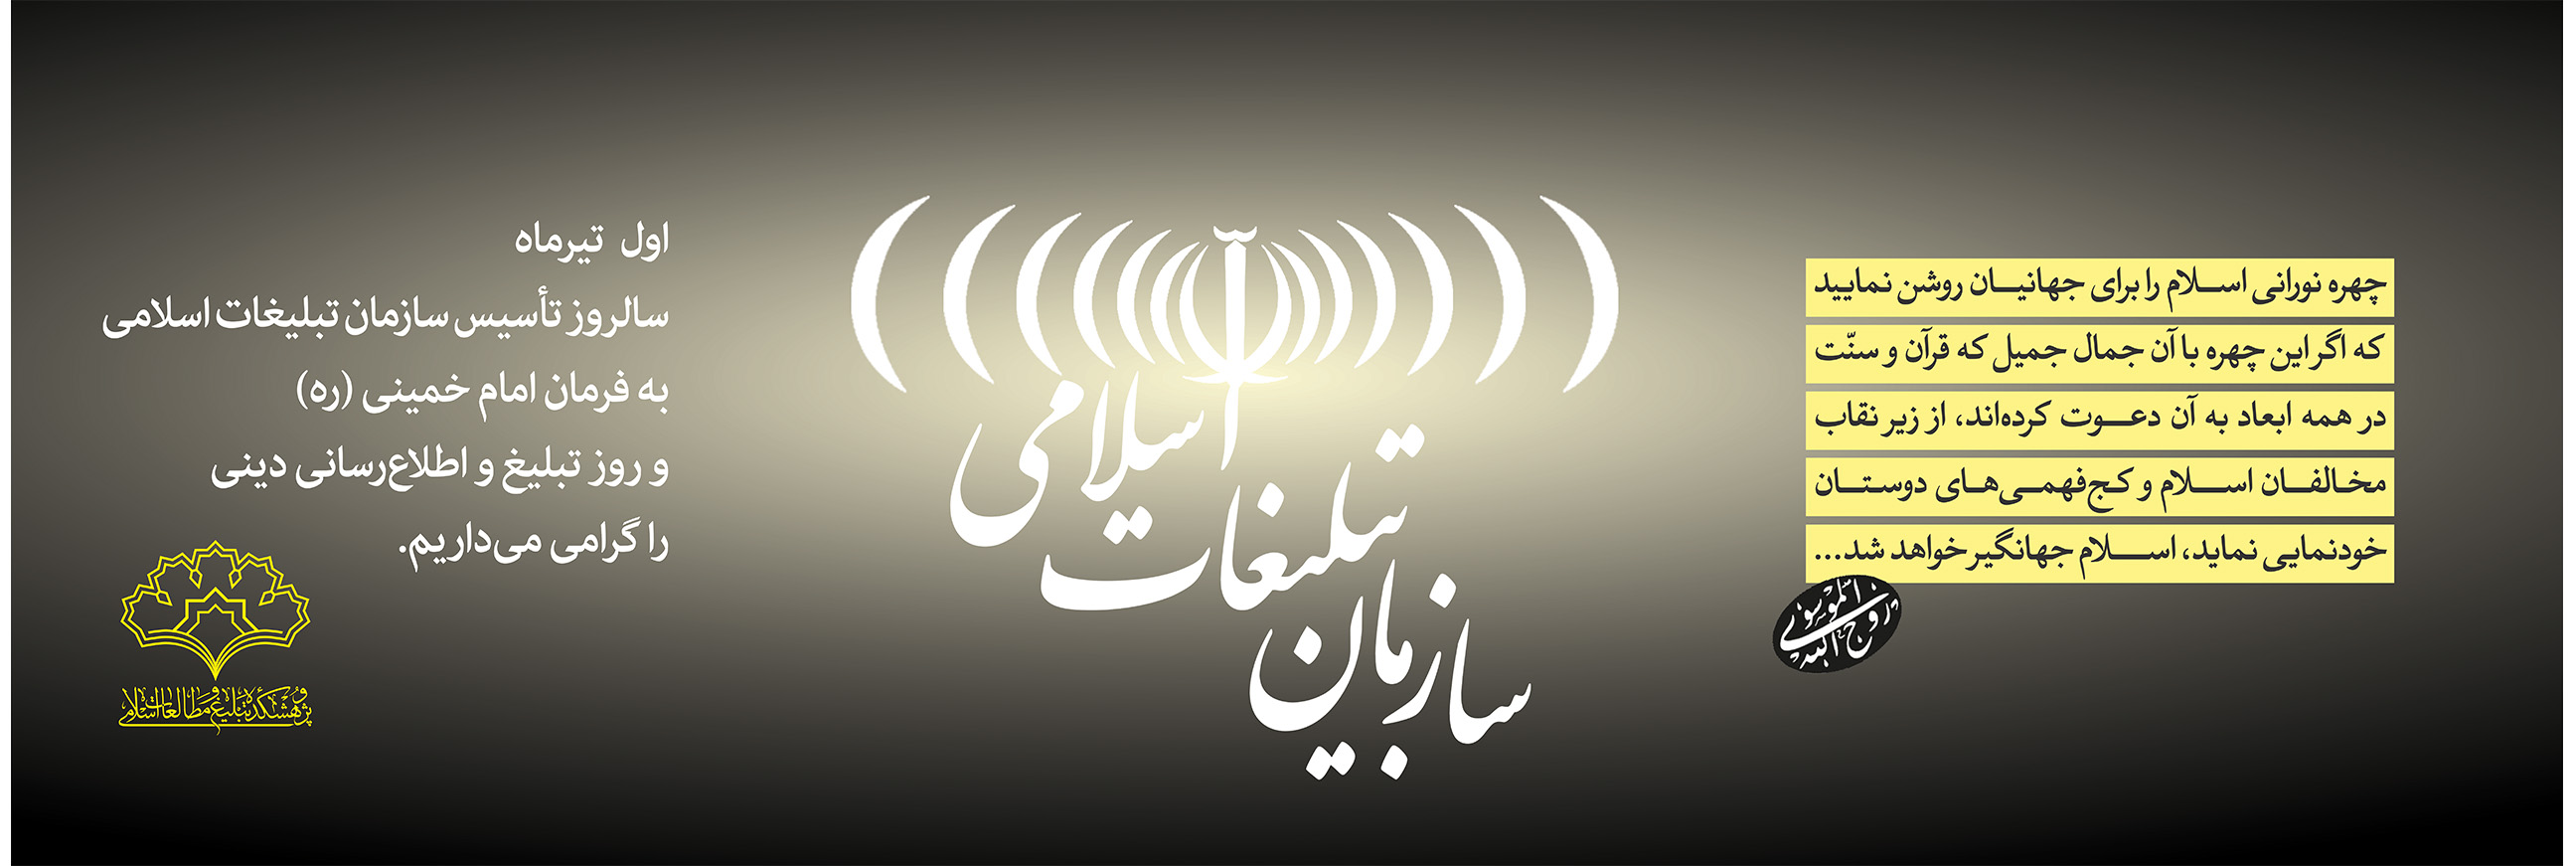 سالروز تاسیس سازمان تبلیغات اسلامی به فرمان امام خمینی (ره) گرامی باد